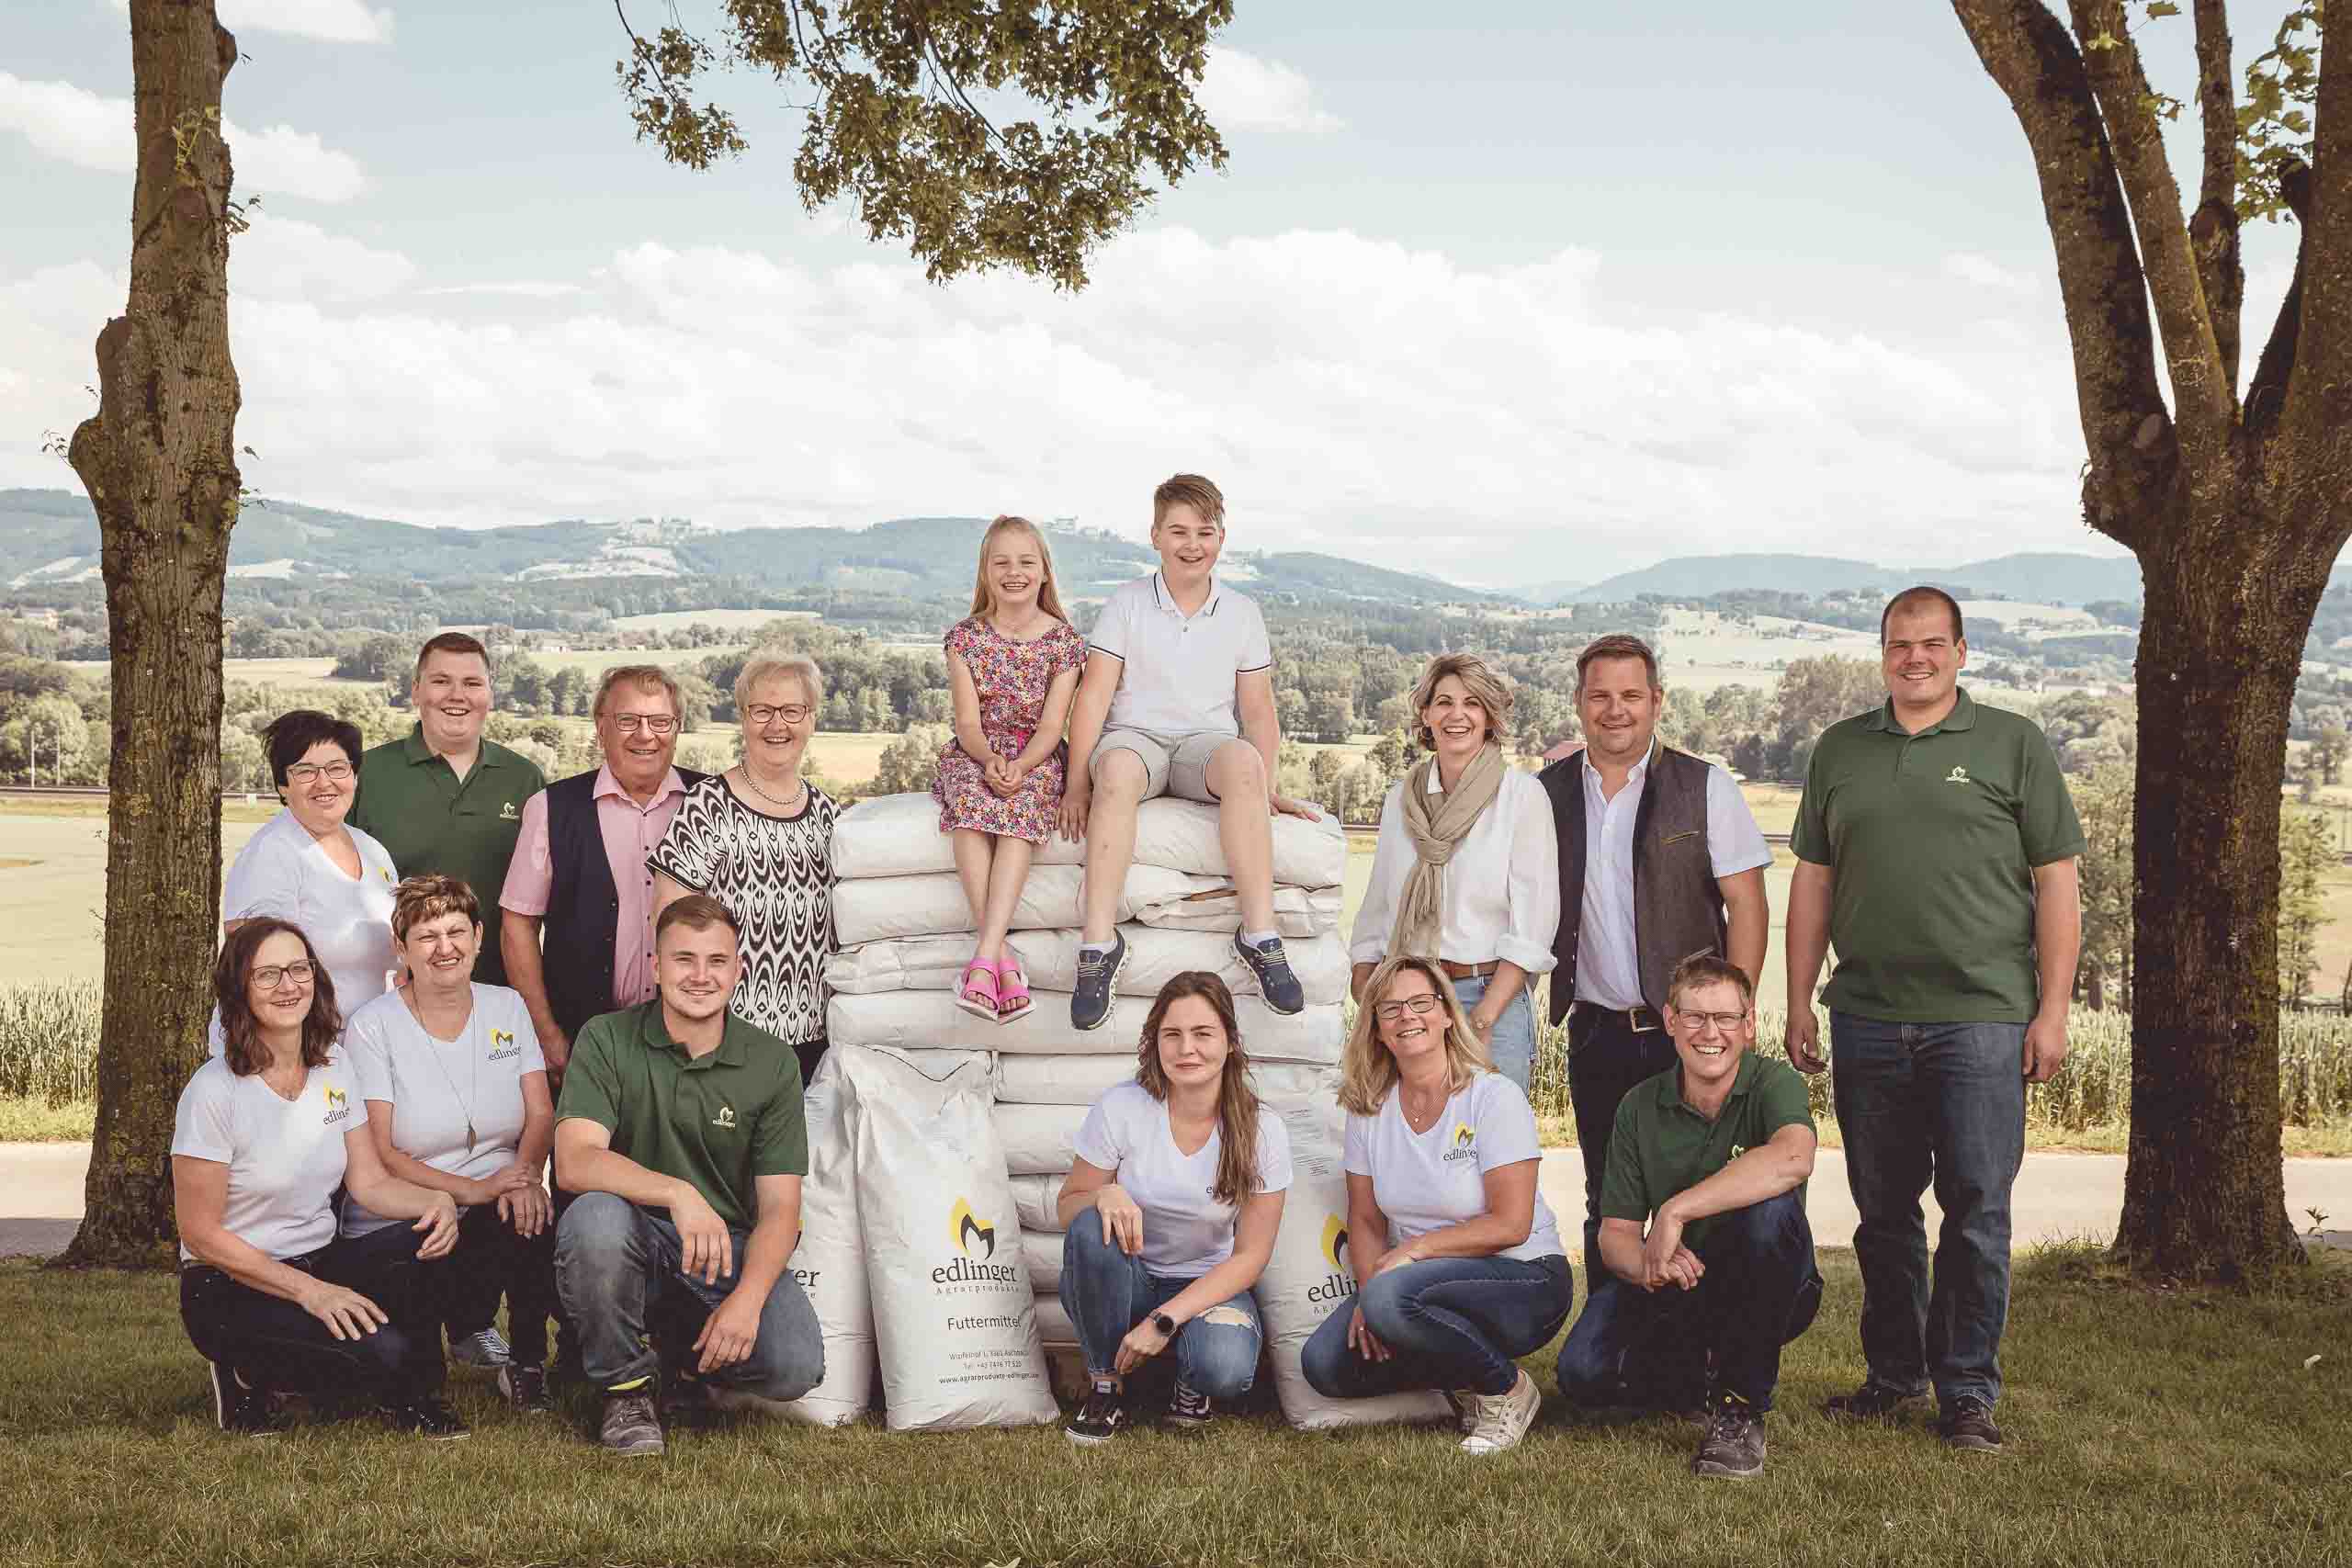 Team Agrarprodukte Edlinger